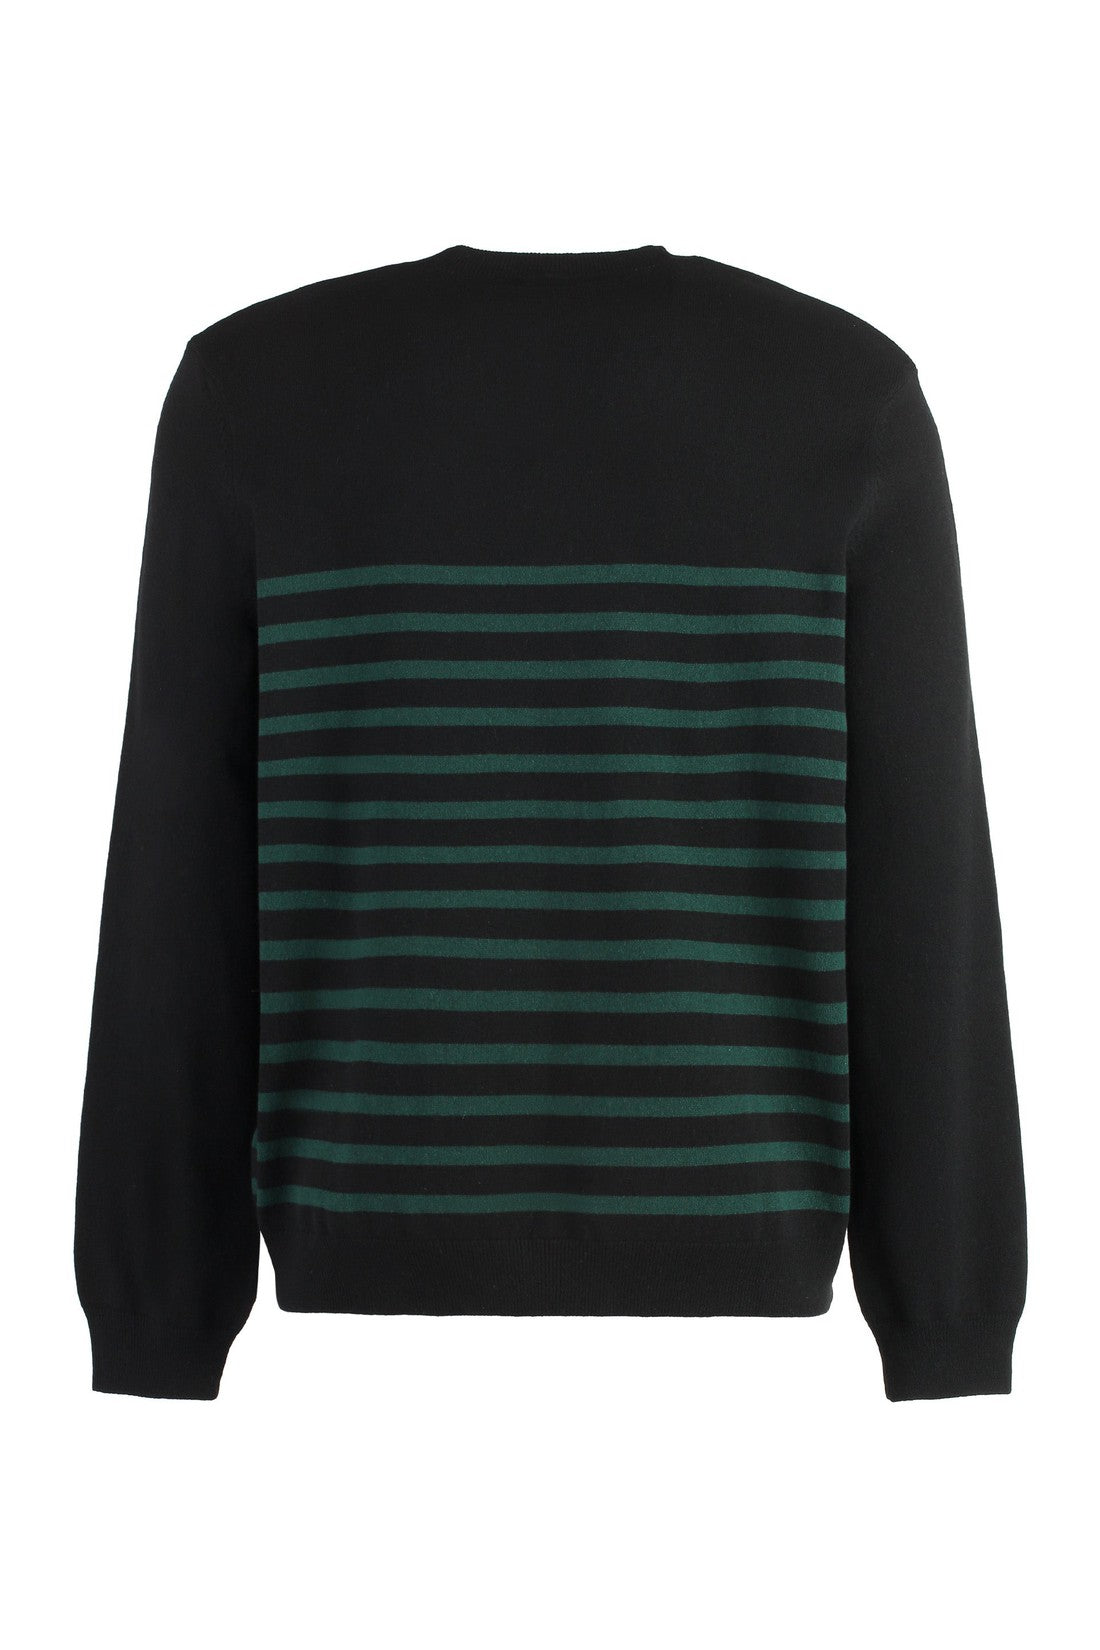 A.P.C.-OUTLET-SALE-Cotton blend crew-neck sweater-ARCHIVIST